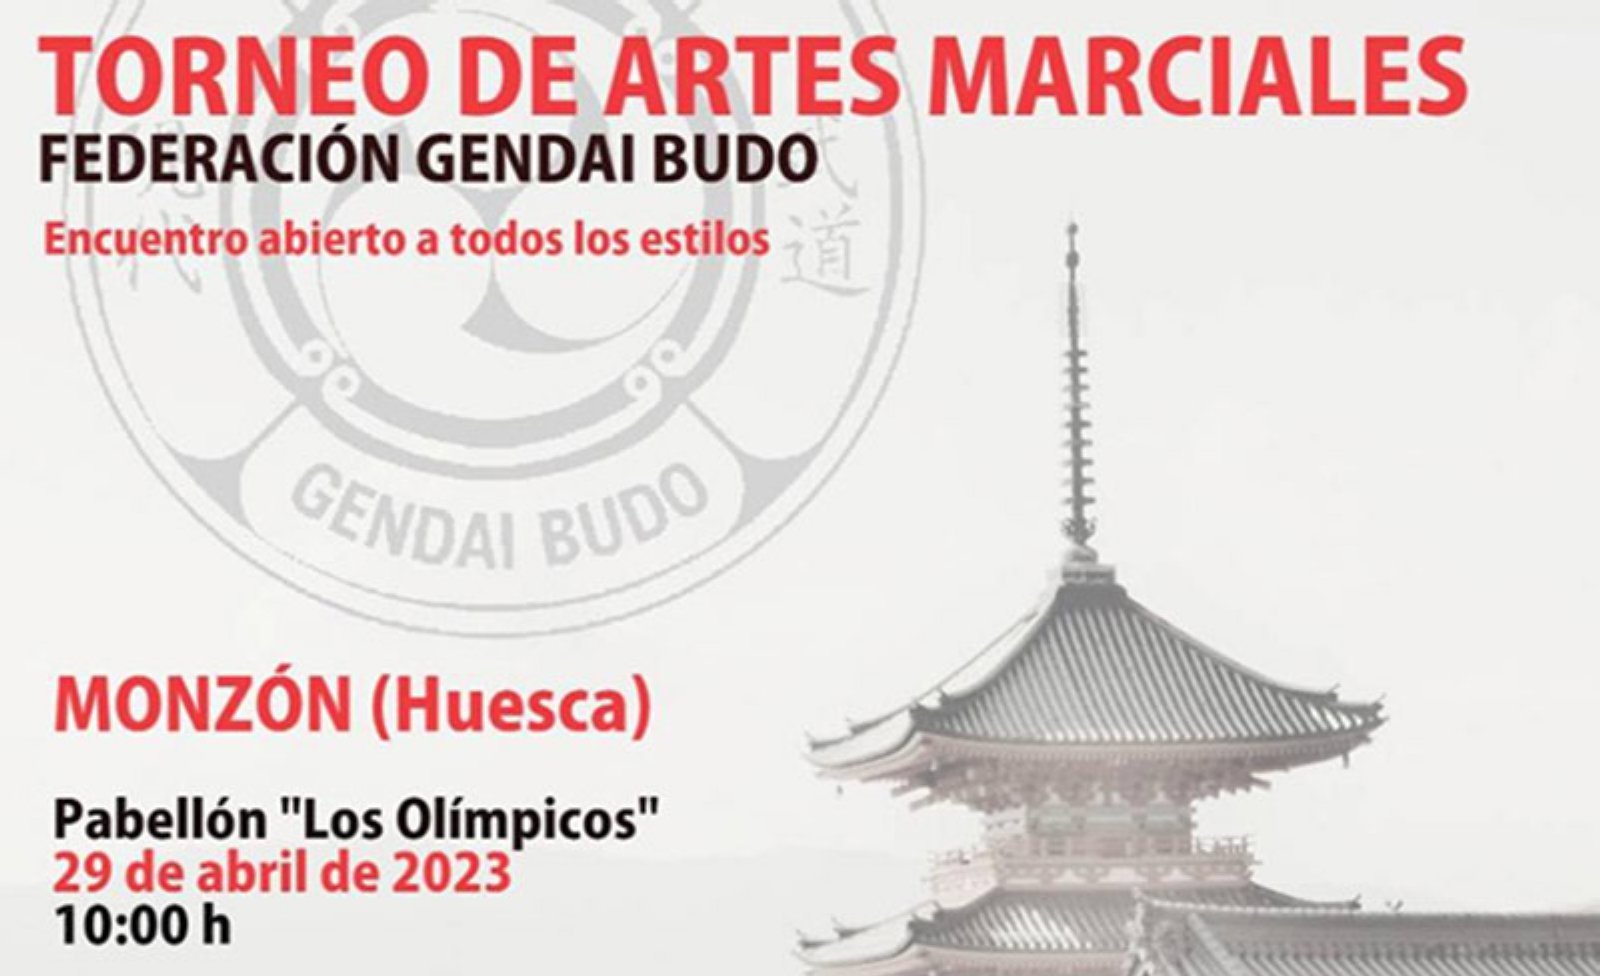 Torneo de Artes Marciales en Monzón